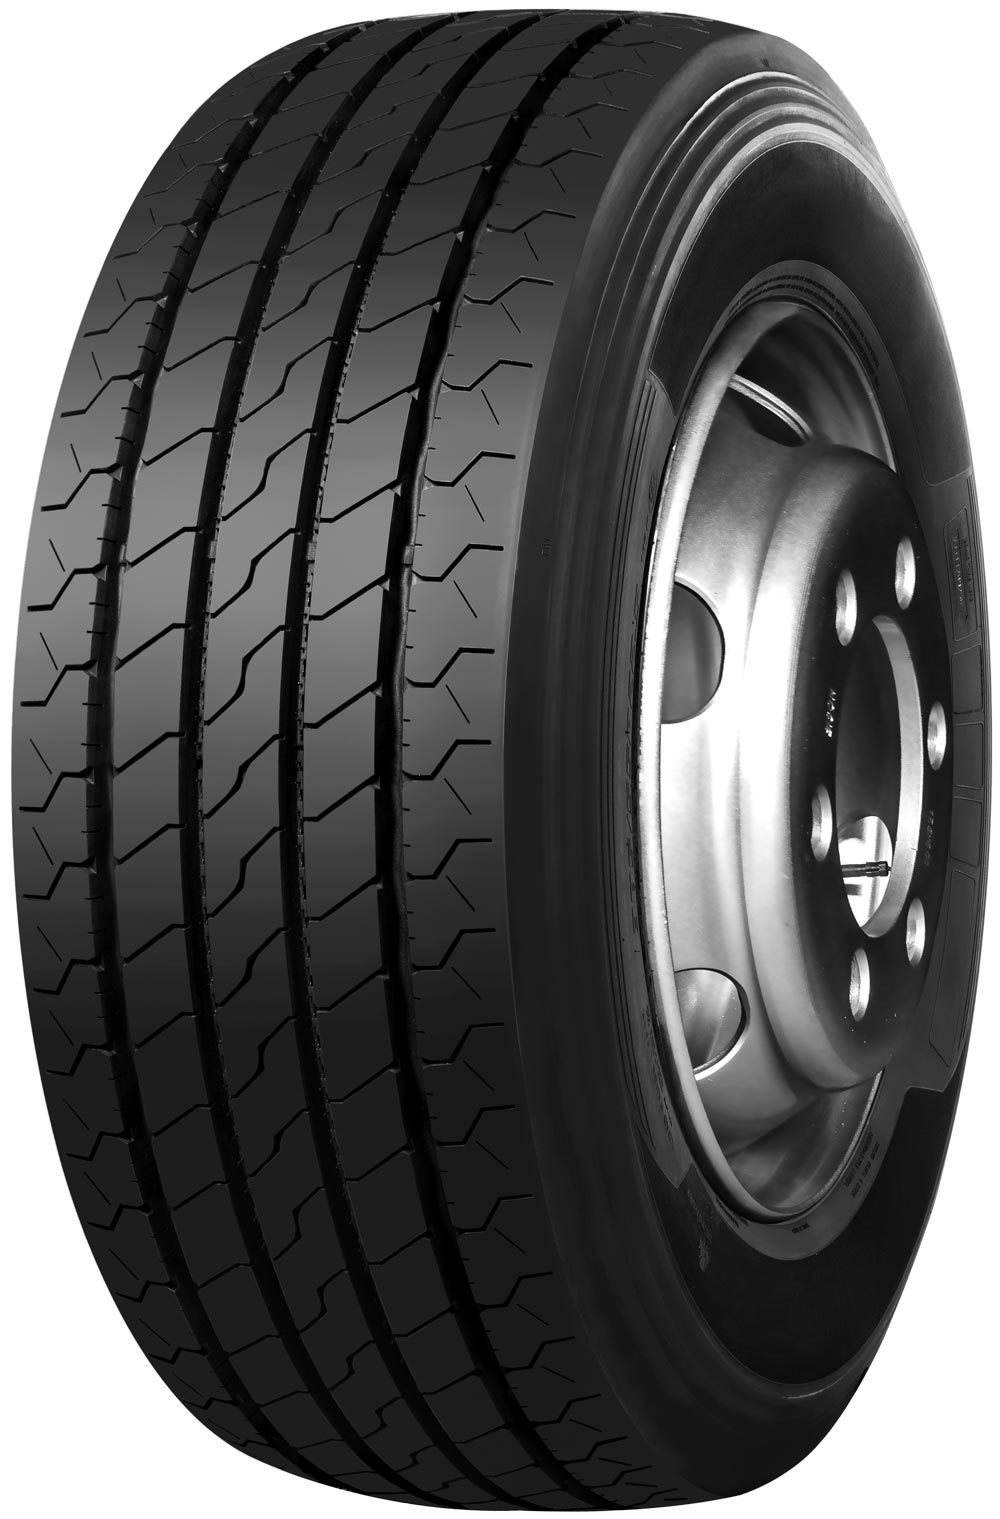 product_type-heavy_tires TRAZANO NOVO TRANS S 14 TL 225/75 R17.5 129M